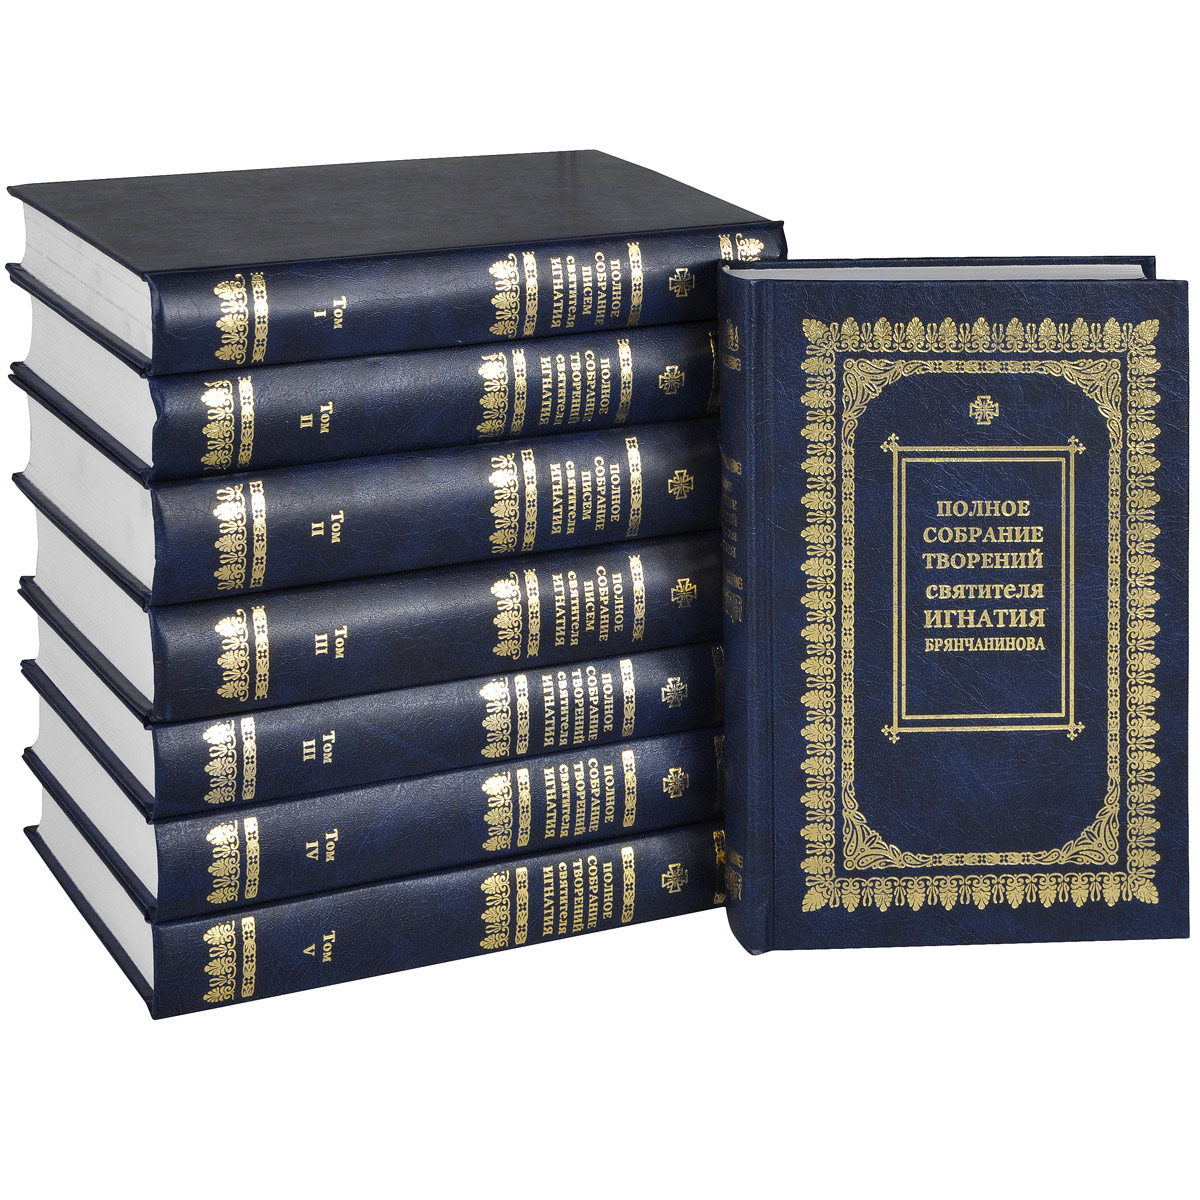 Полное собрание писем и творений святителя Игнатия Брянчанинова (комплект из 8 книг)